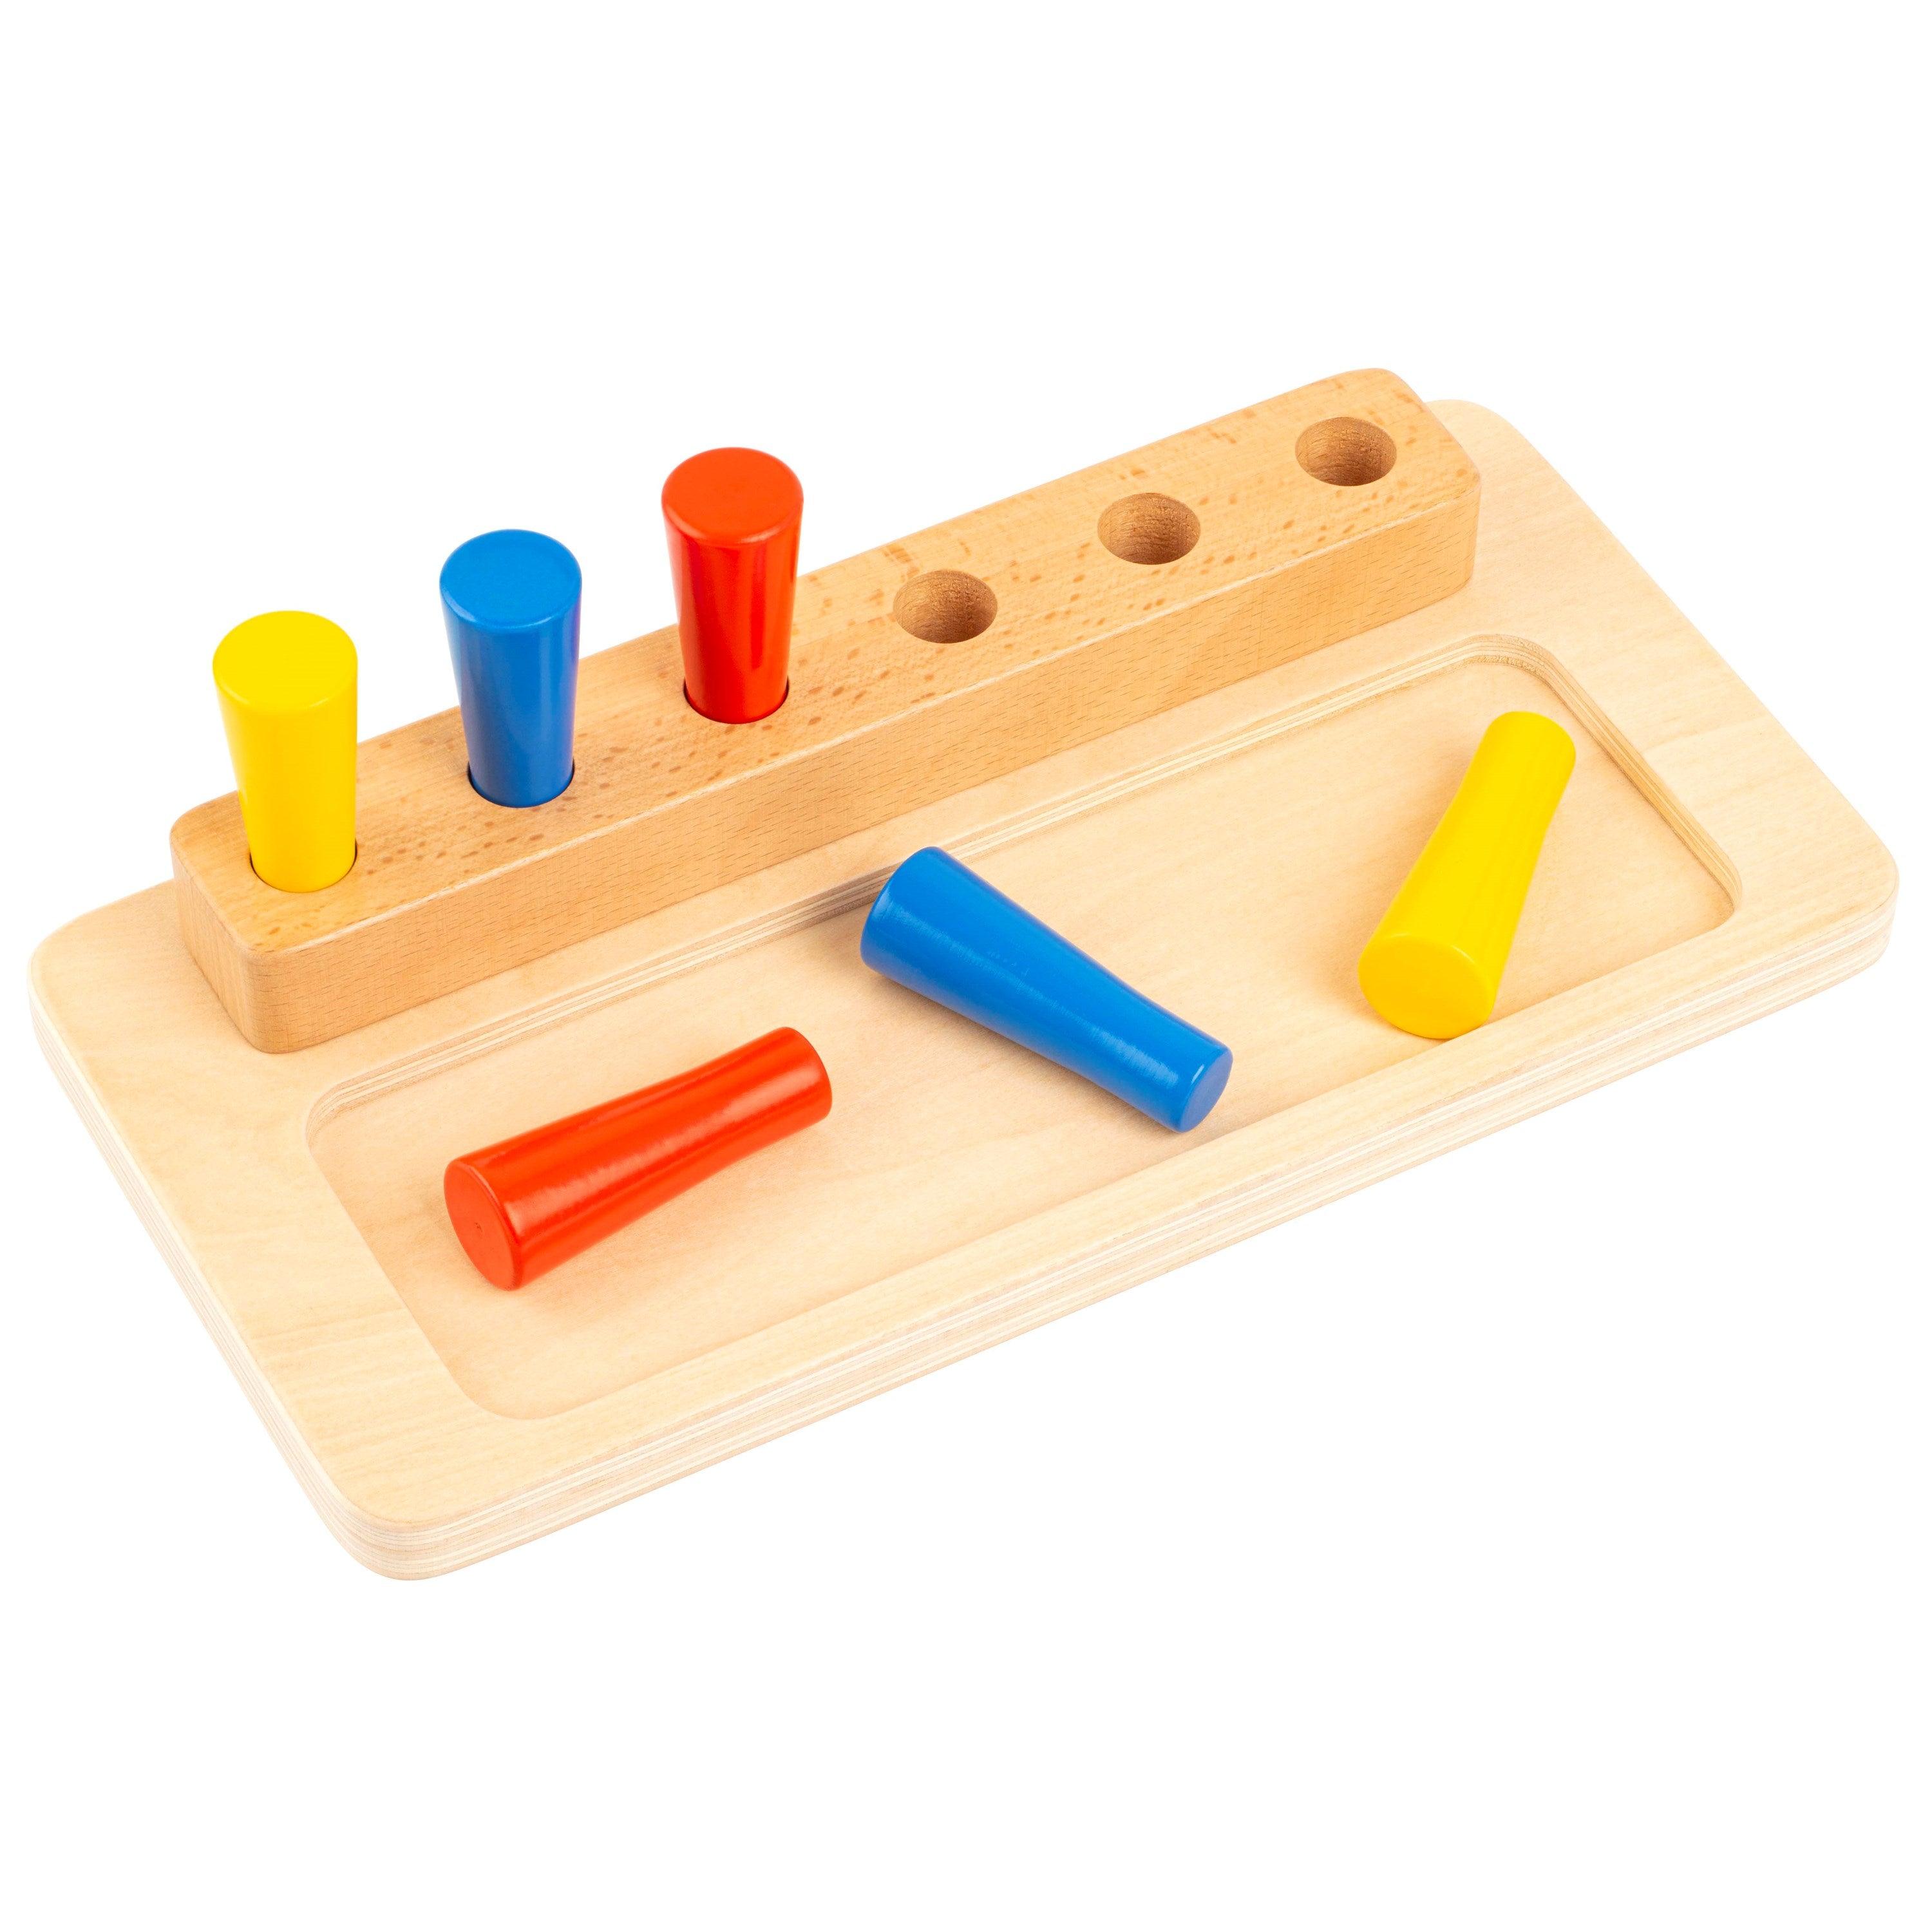 Educo: Place the Pin Montessori material